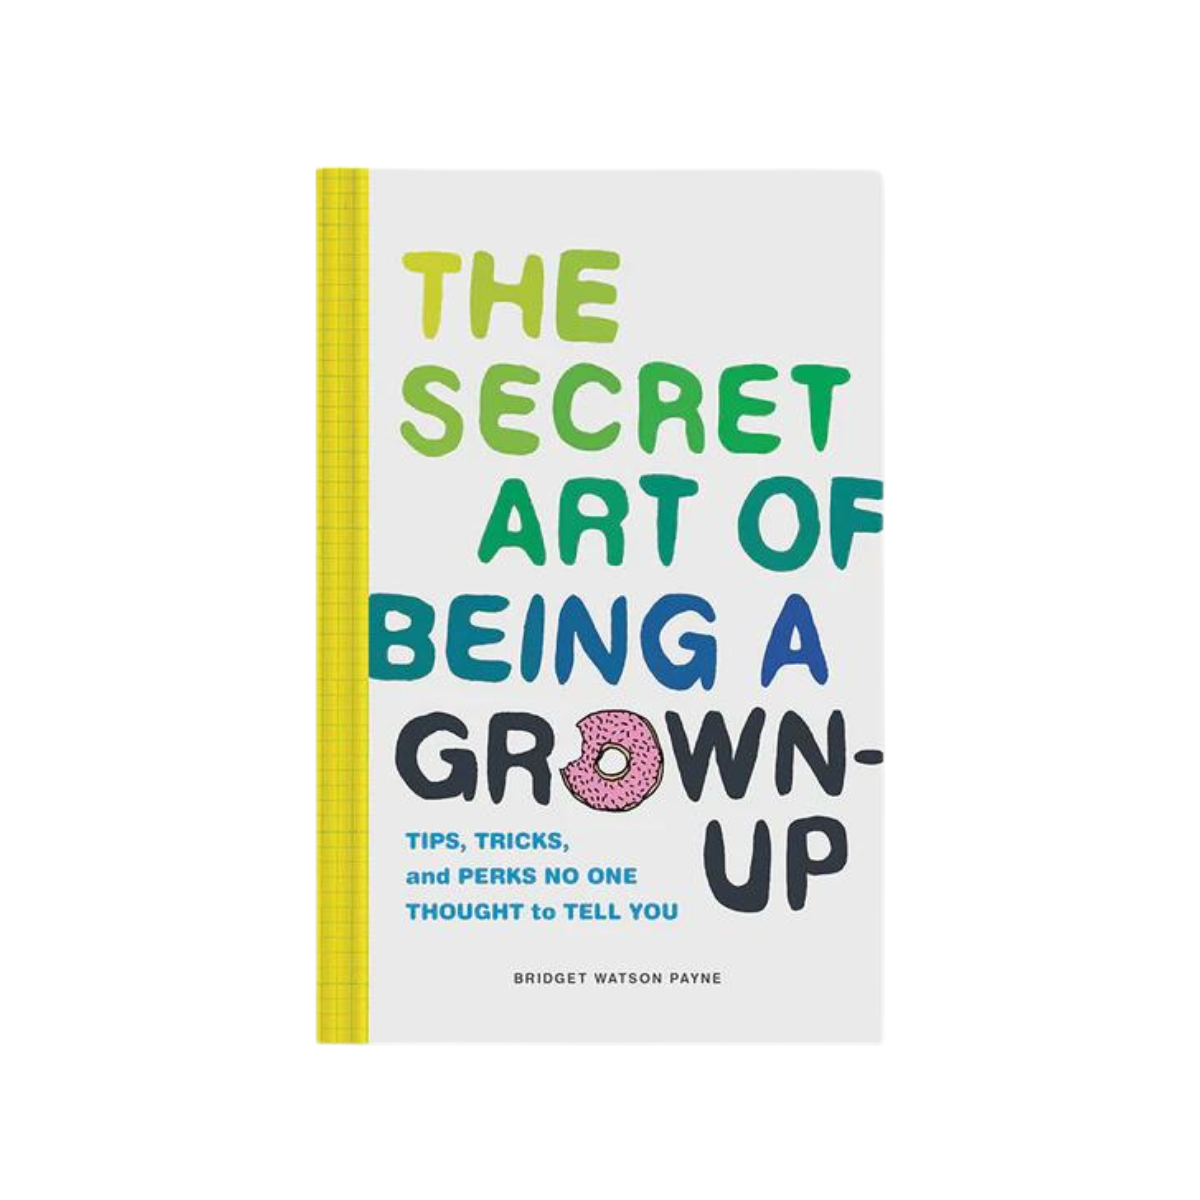 The Secret Art of Being a Grown-Up